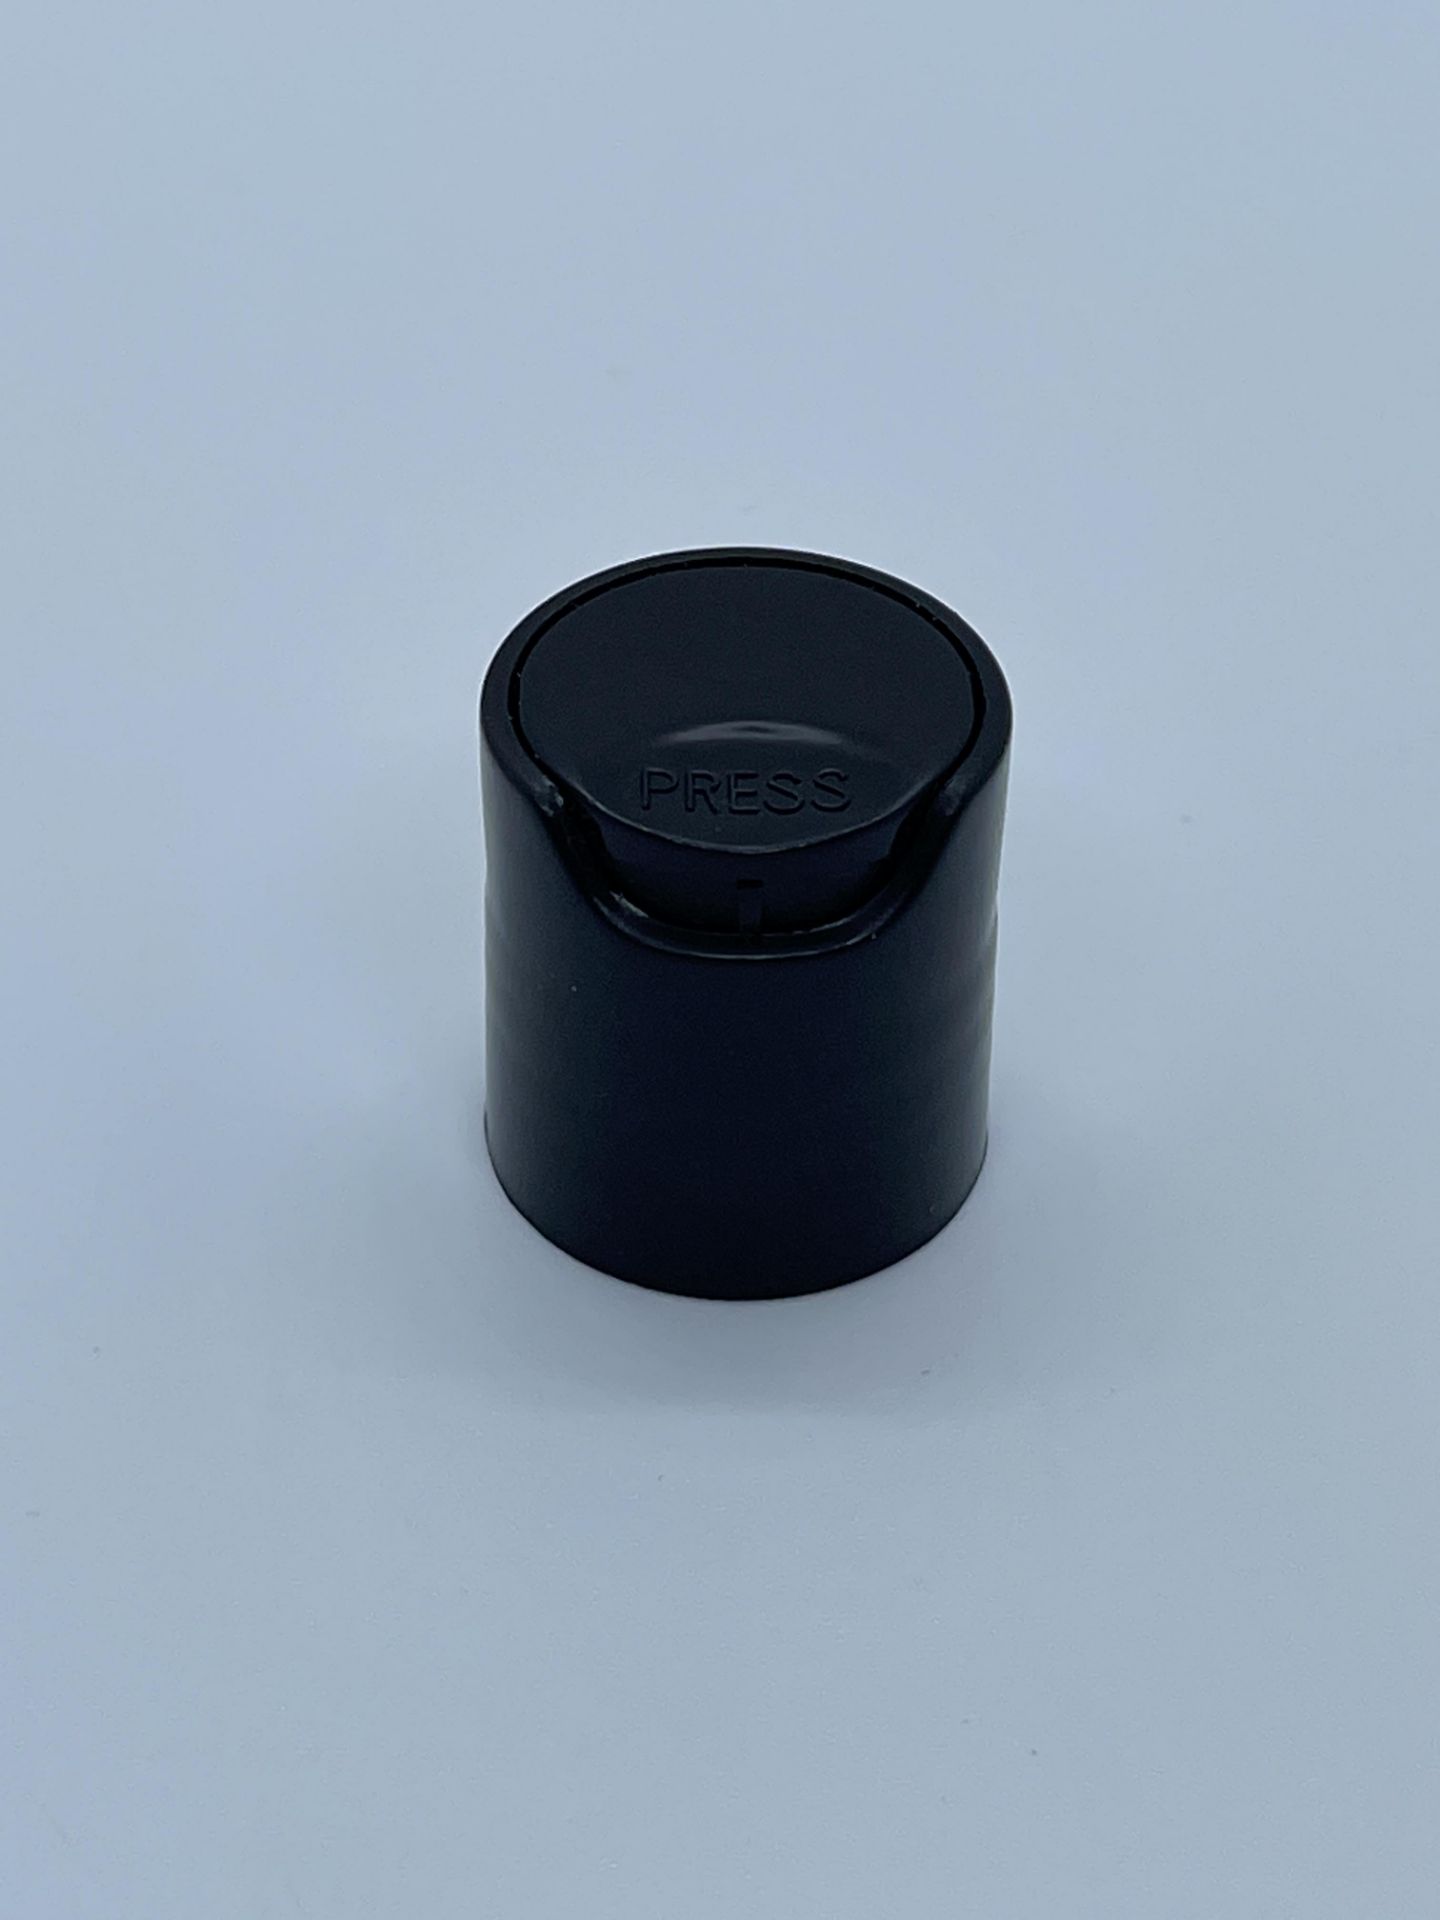 84,000 - Black Disc Bottle Caps for 2 oz plastic bottles and 4 oz glass bottles, 20-410 Threading - Image 8 of 8